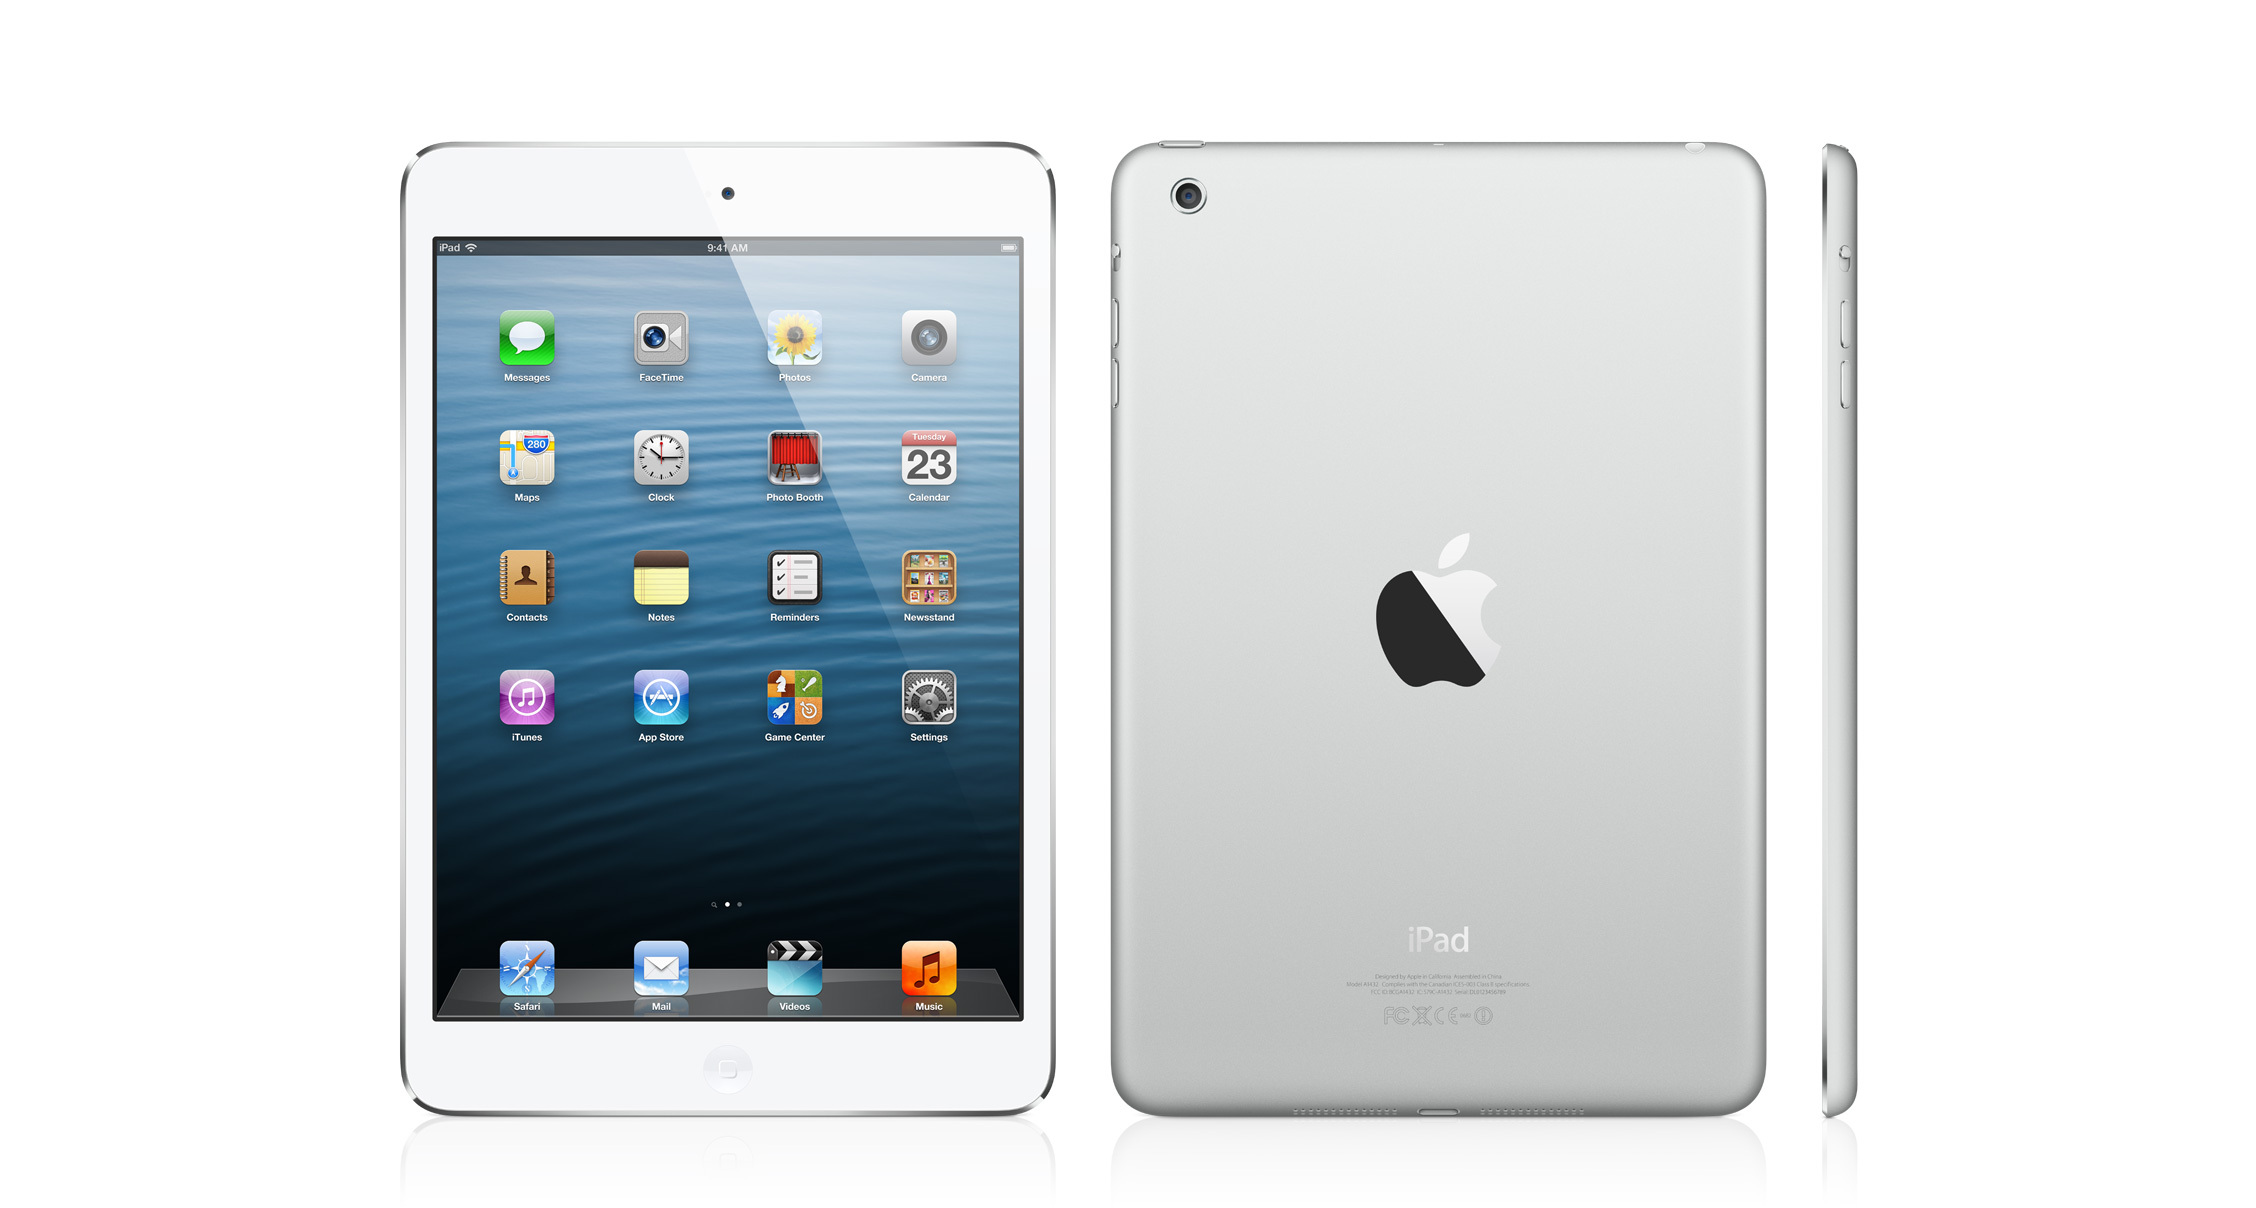 Máy tính bảng iPad mini 4 Retina + Cellular- Hàng cũ - 64GB, Wifi + 3G/4G, 7.9 inch